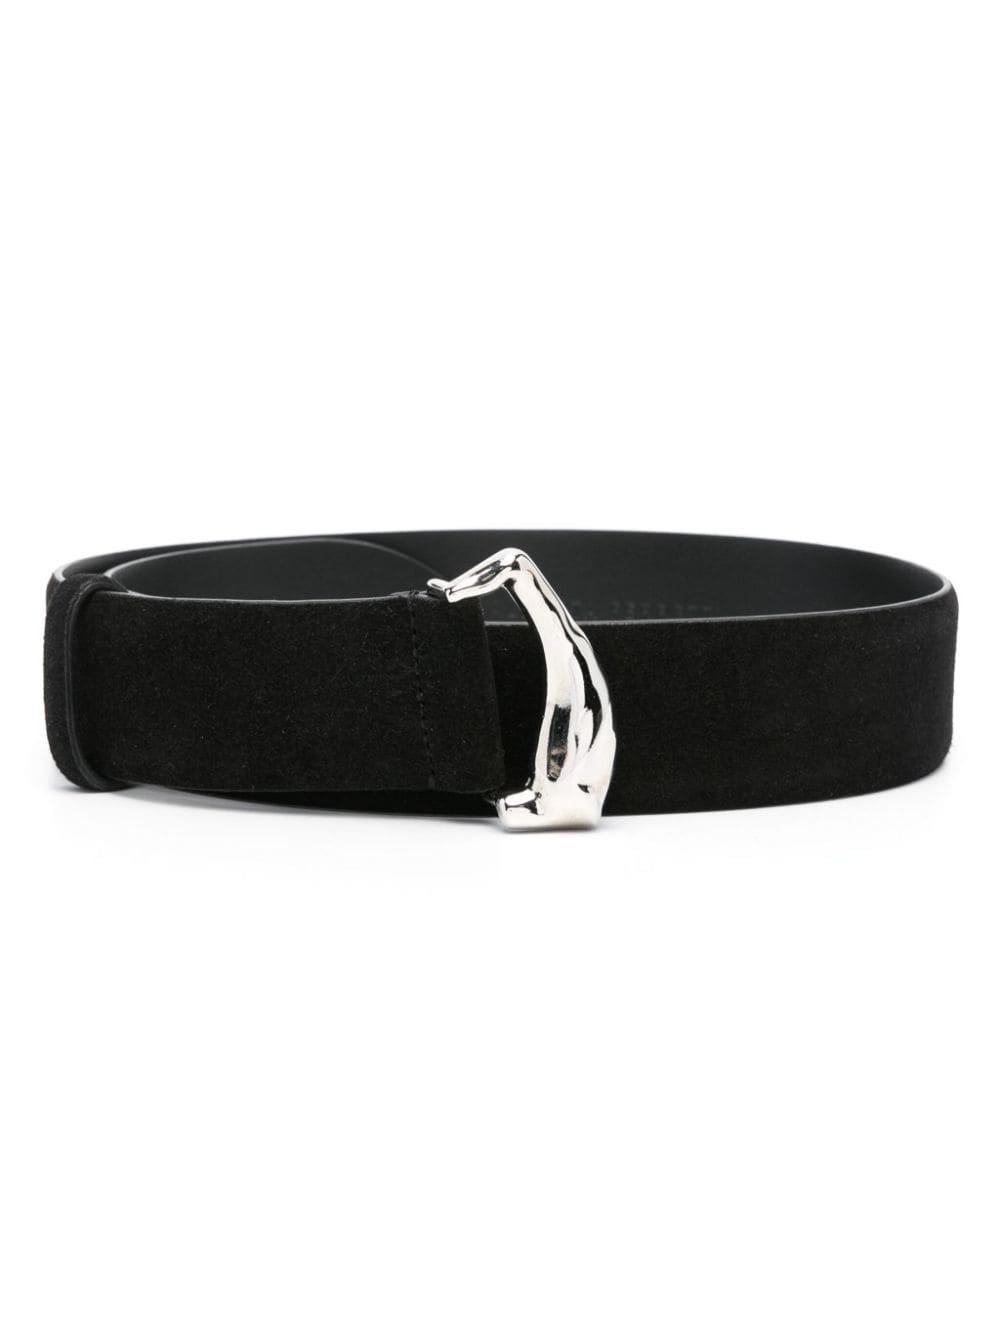 Alberta Ferretti suede leather belt - Black von Alberta Ferretti